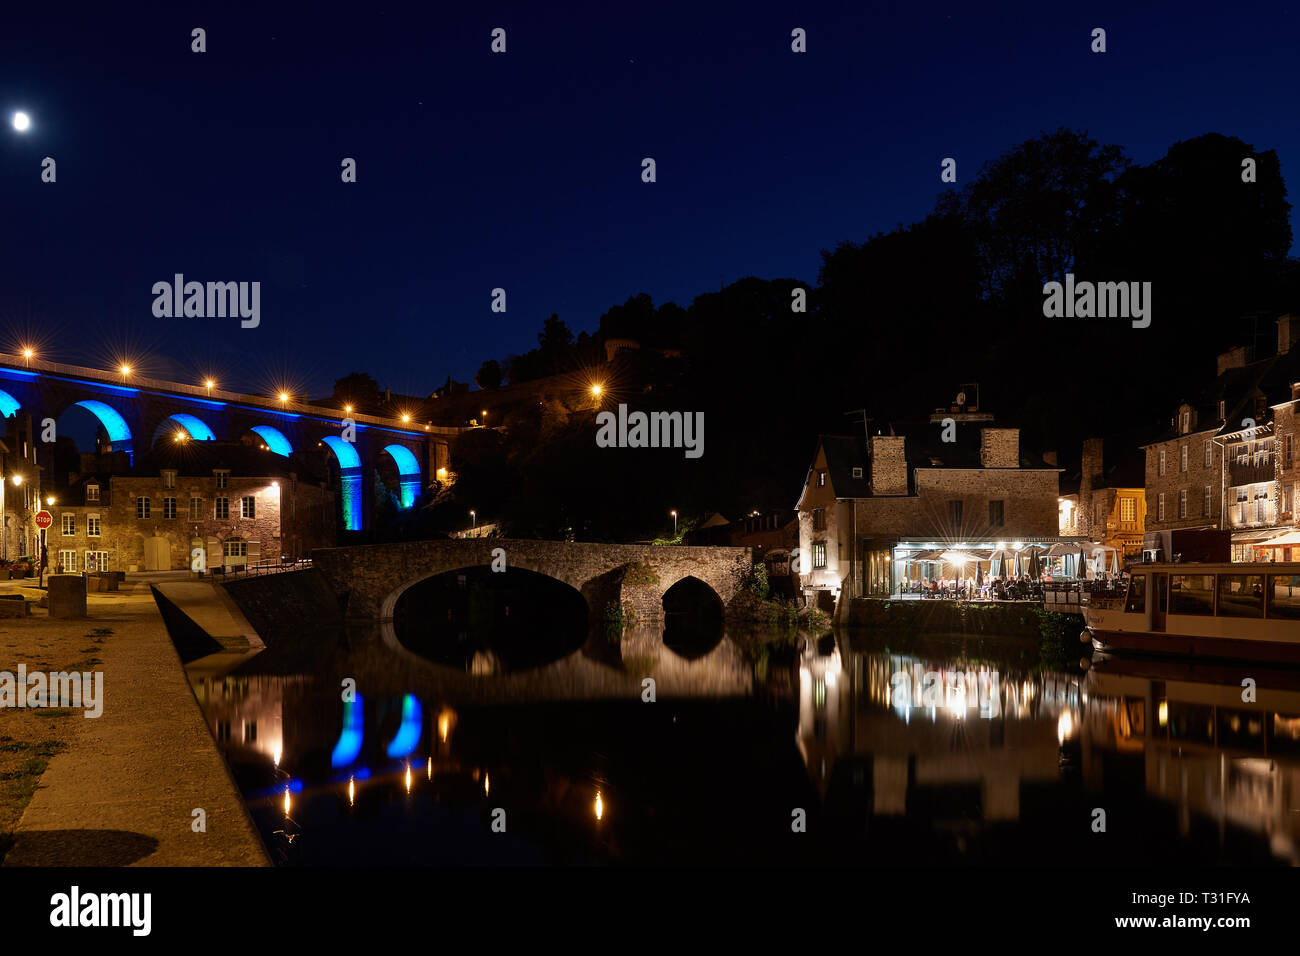 Pintoresco viaducto, antiguas casas de piedra y los restaurantes del puerto de Dinan se refleja en el agua por la noche. Hermosa iluminación bajo un cielo estrellado. Foto de stock